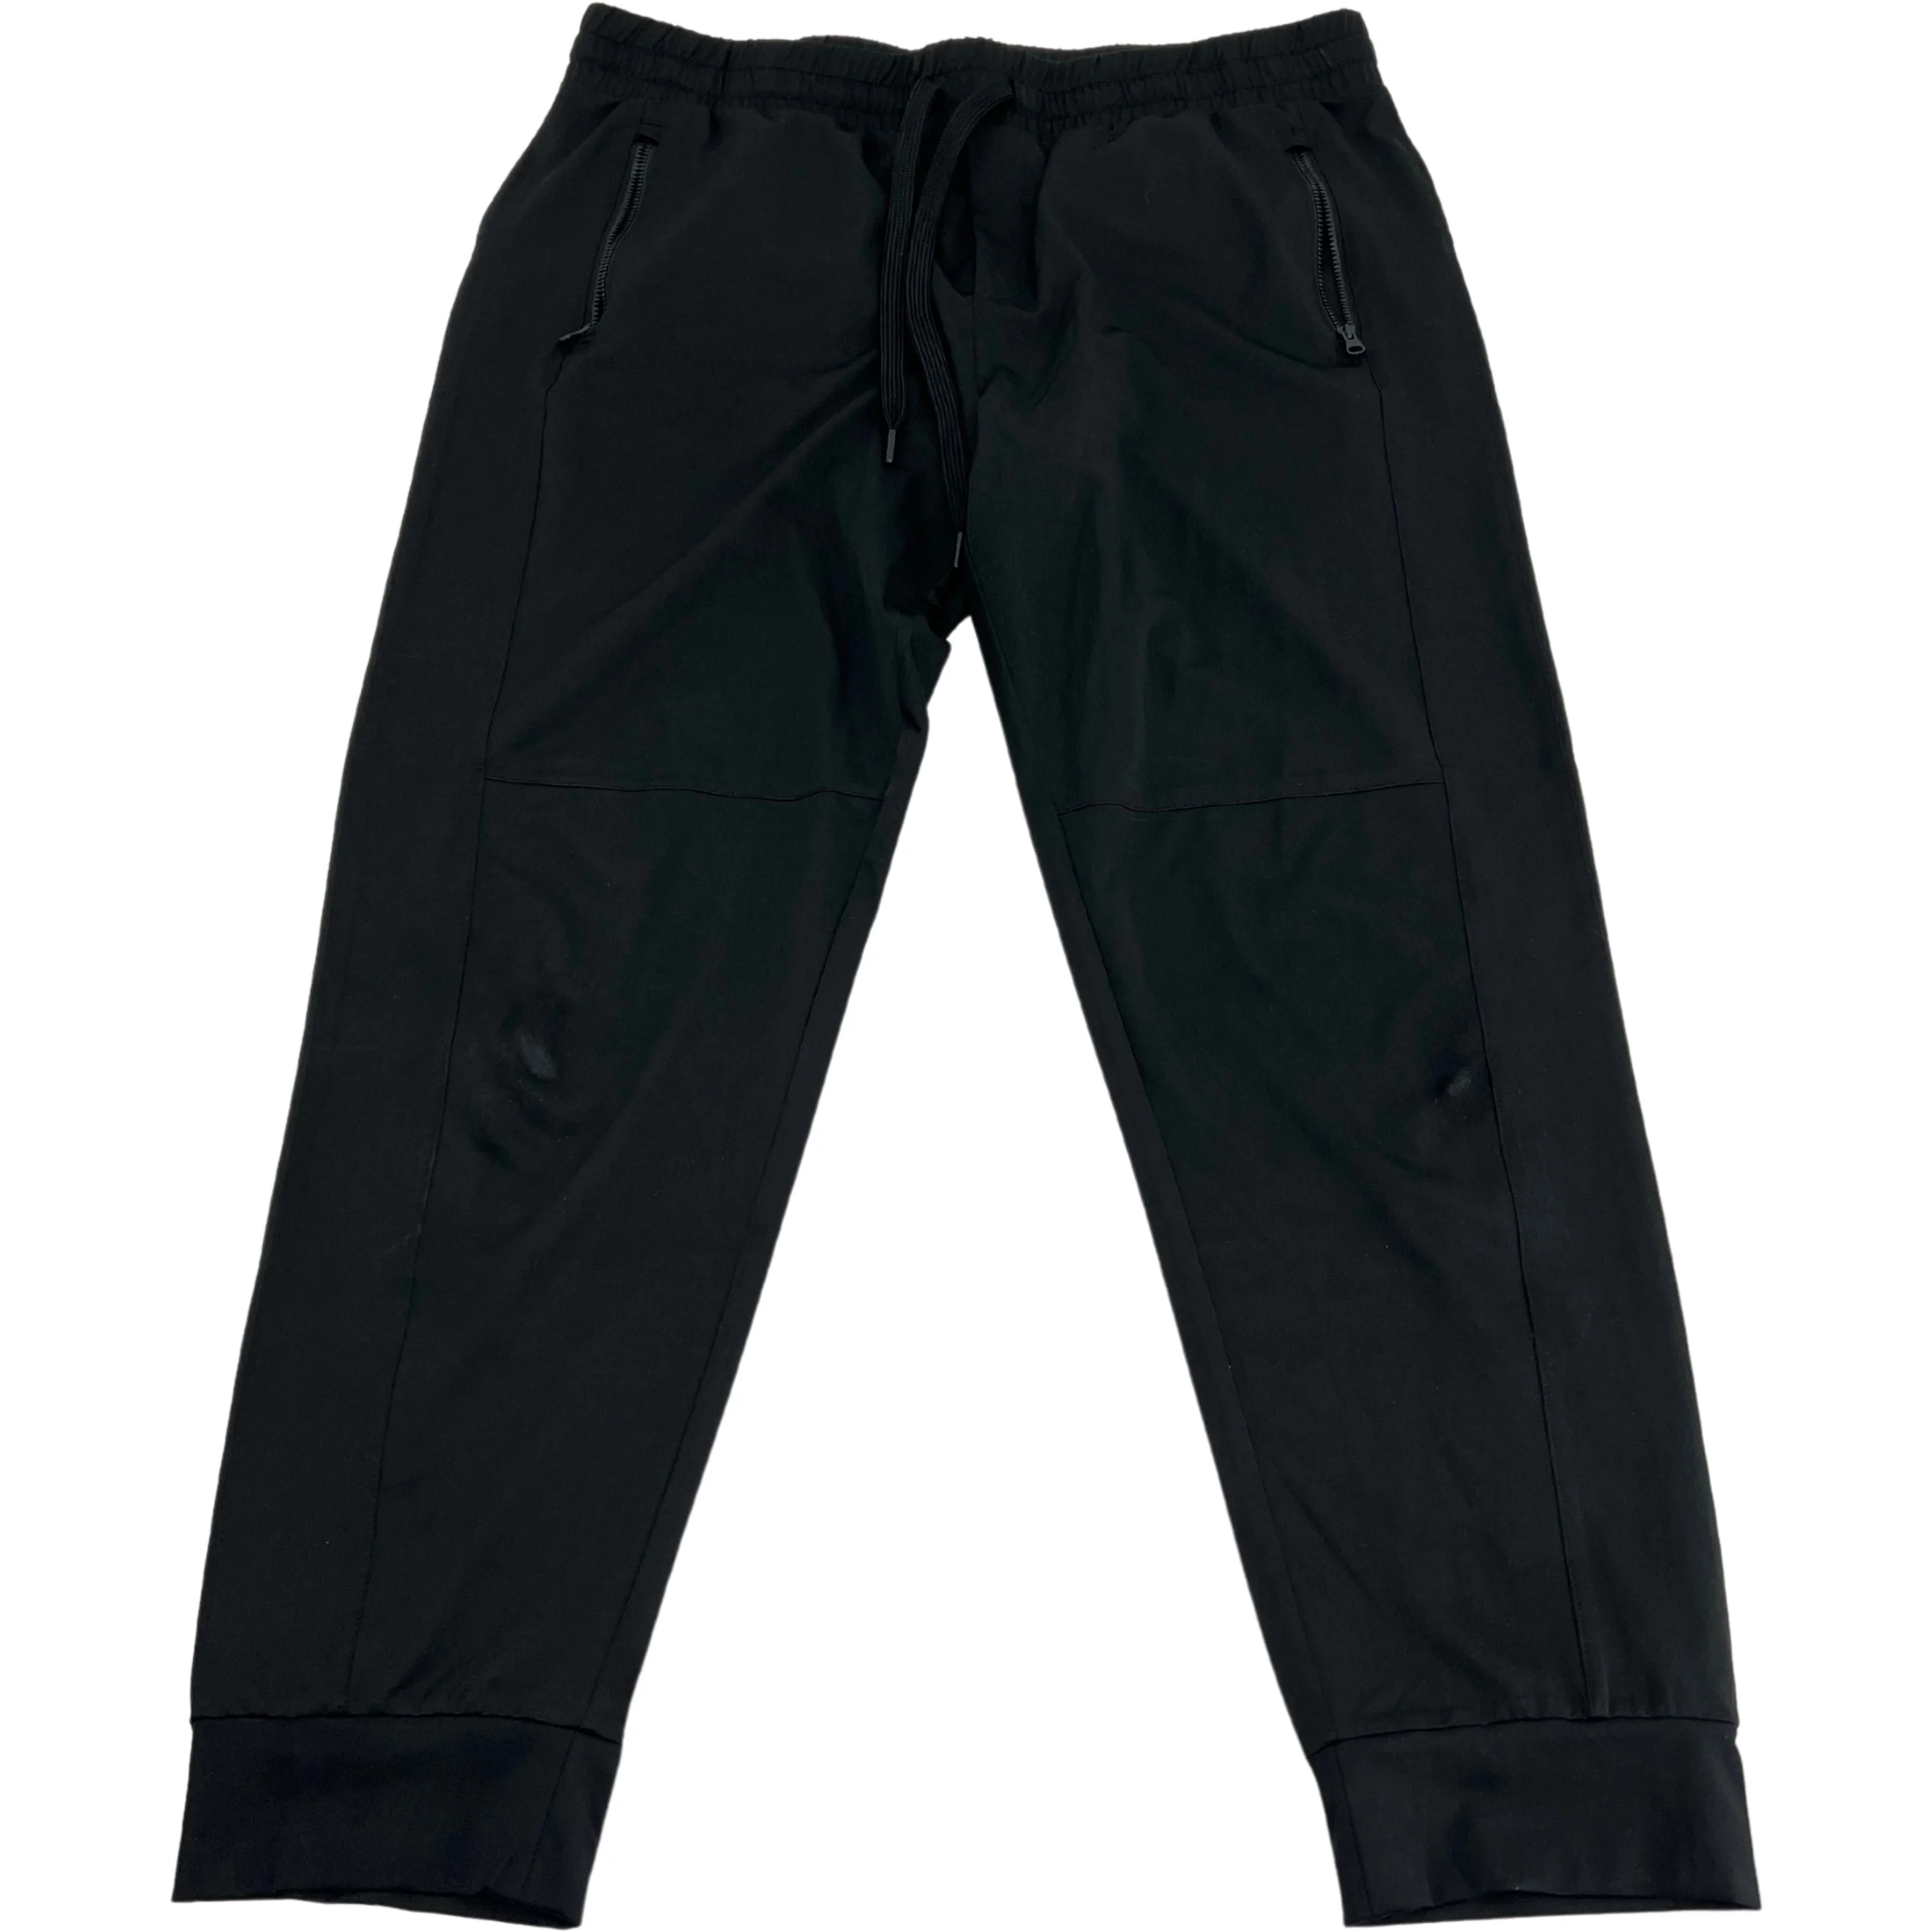 Tilley, Pants & Jumpsuits, Tilley Womens Trek Joggers Elasticated Drawstring  Pants Size Xl Khaki Green